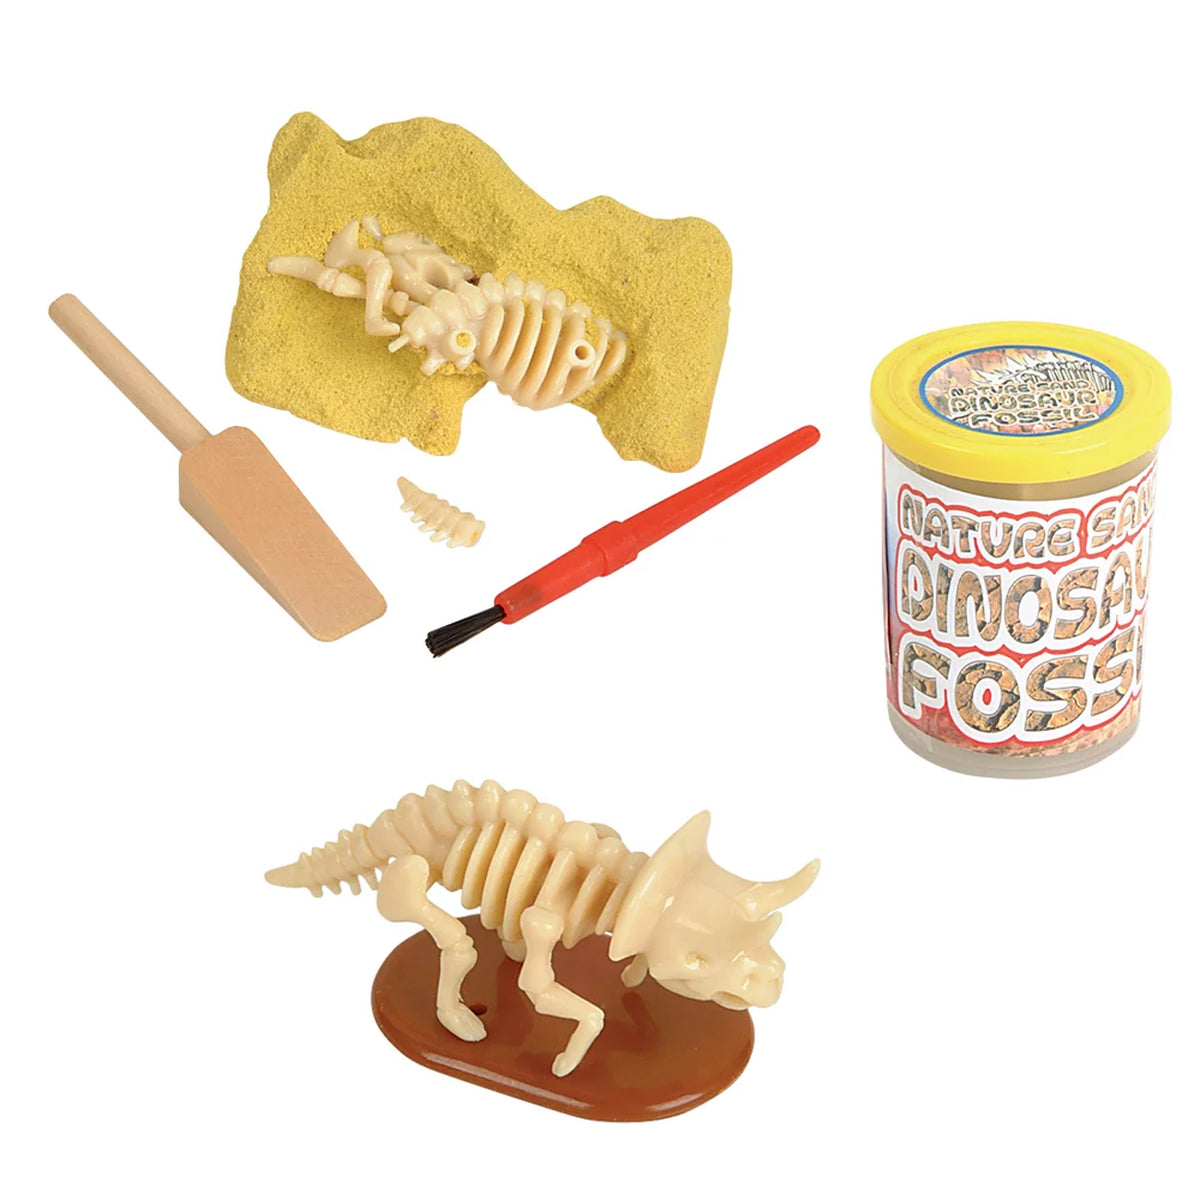 Dinosaur Fossil Kit For Kids In Bulk